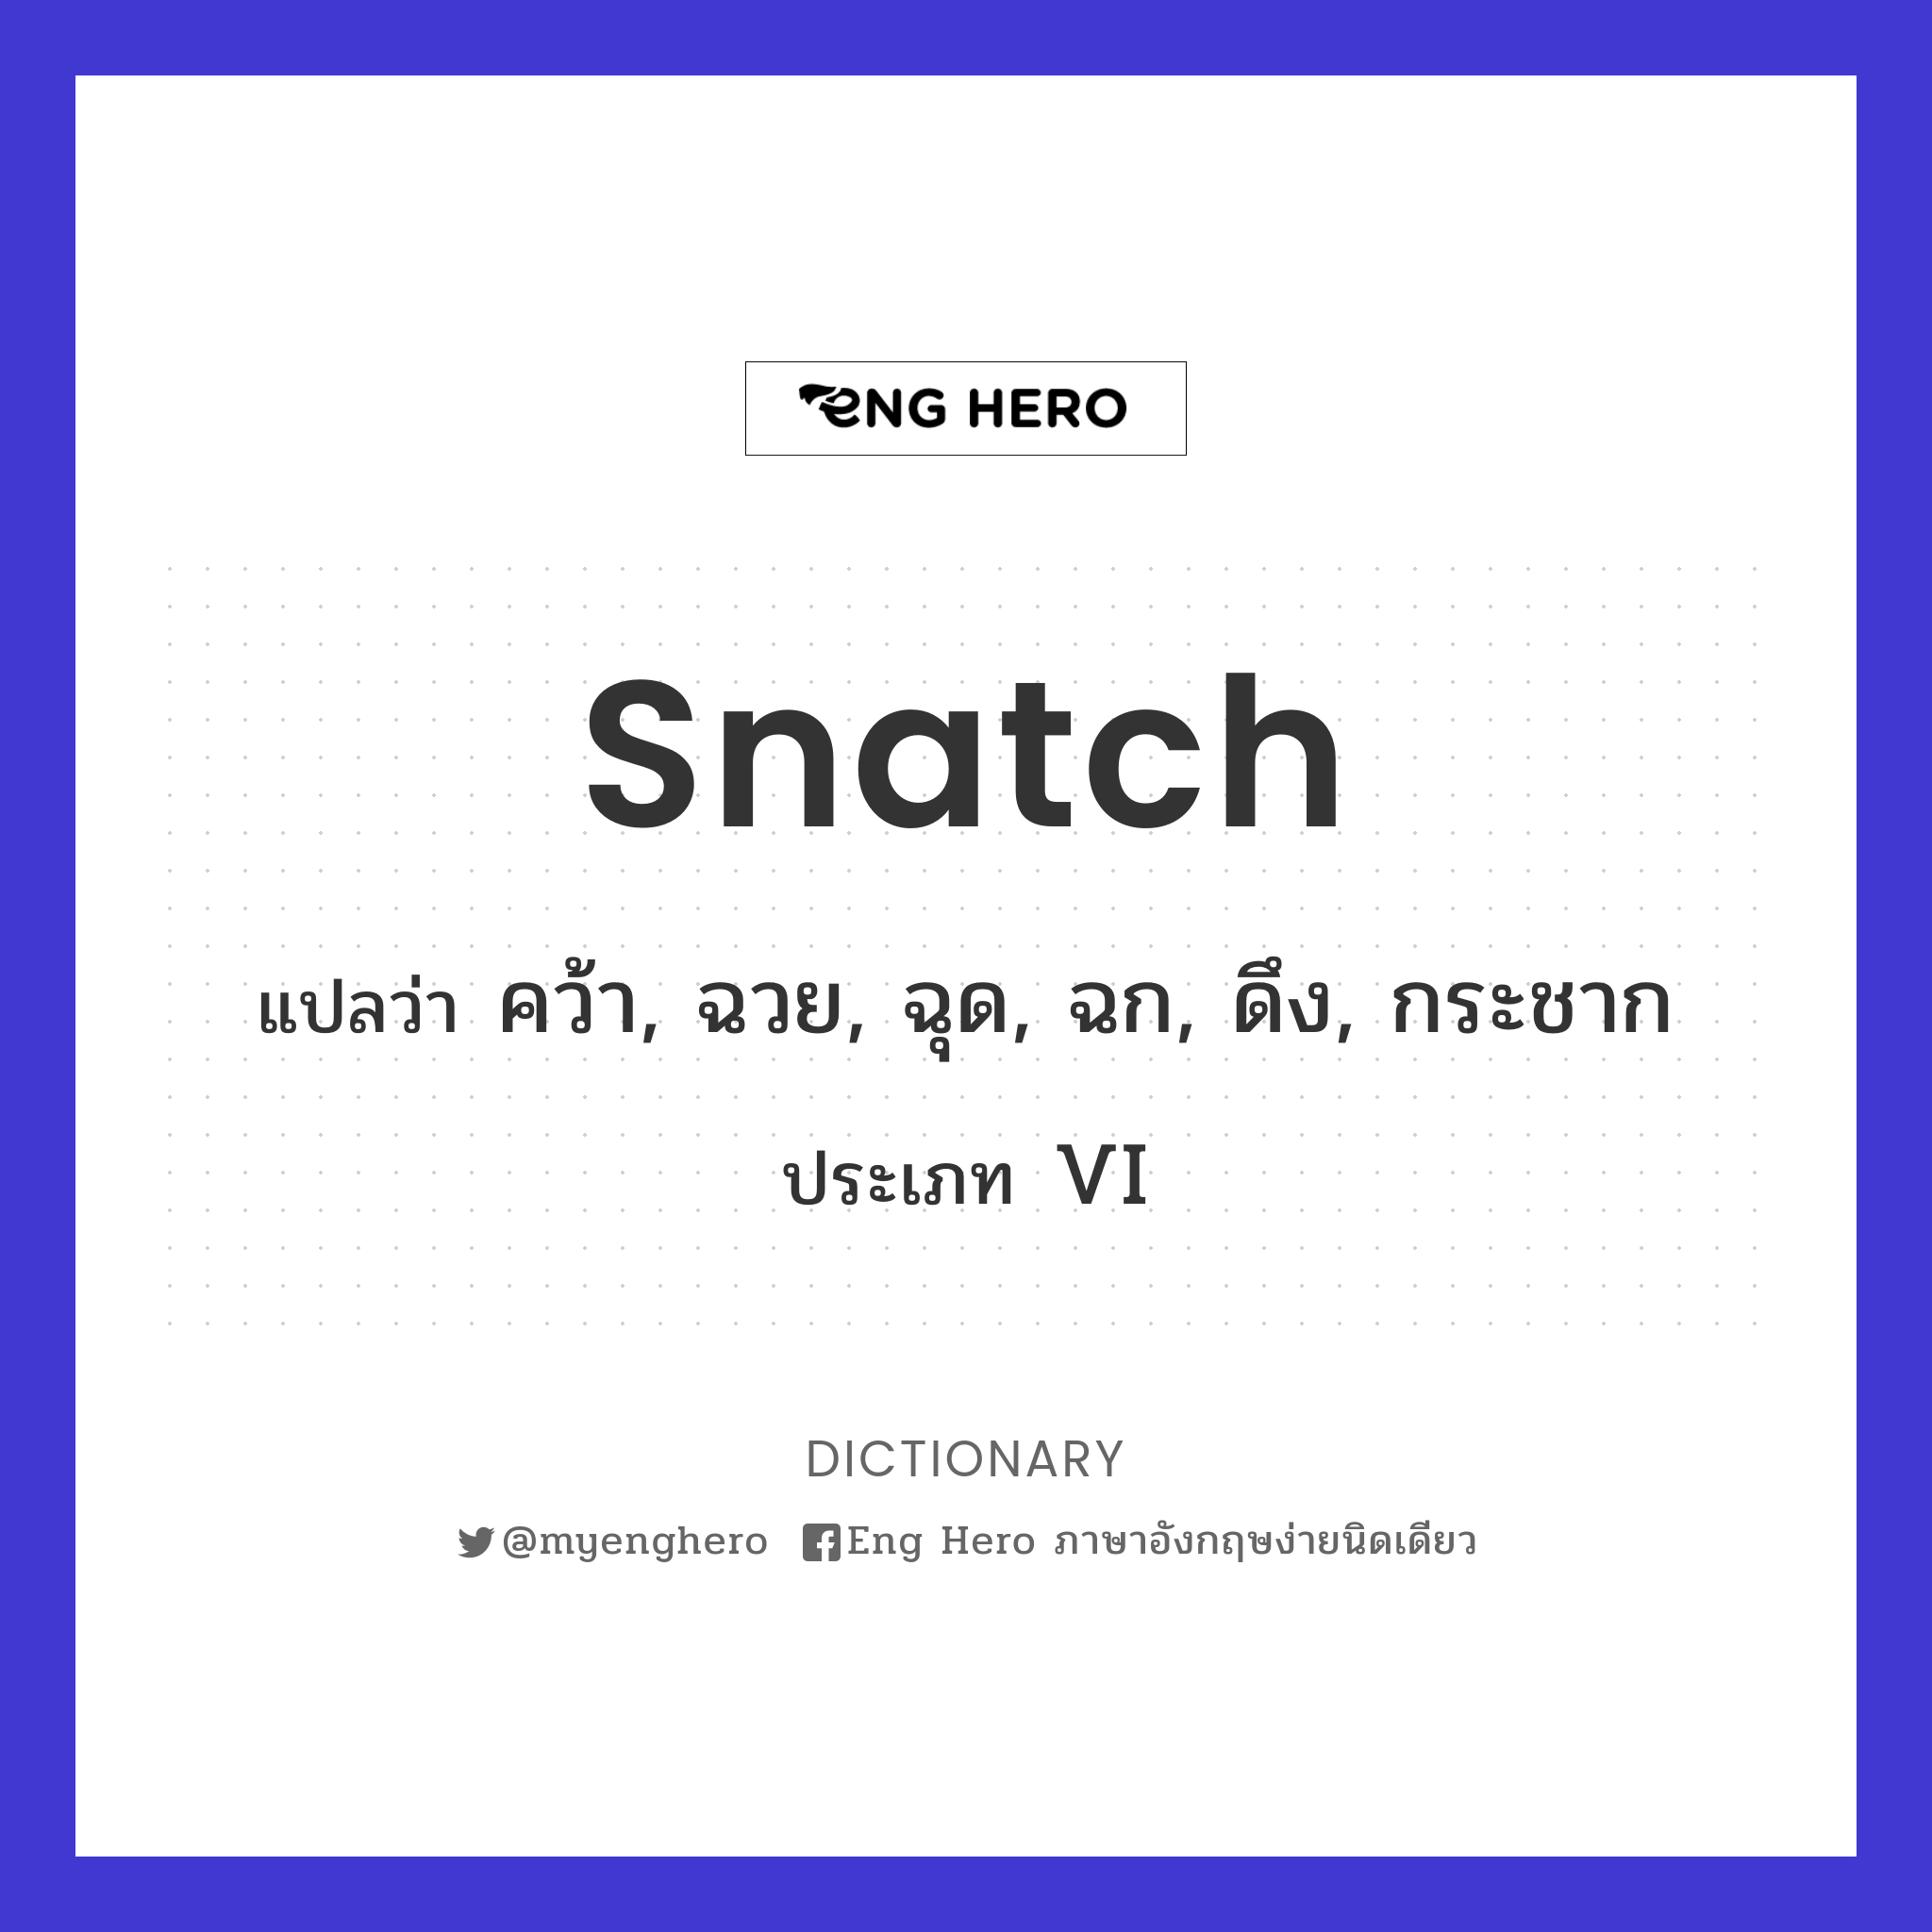 snatch